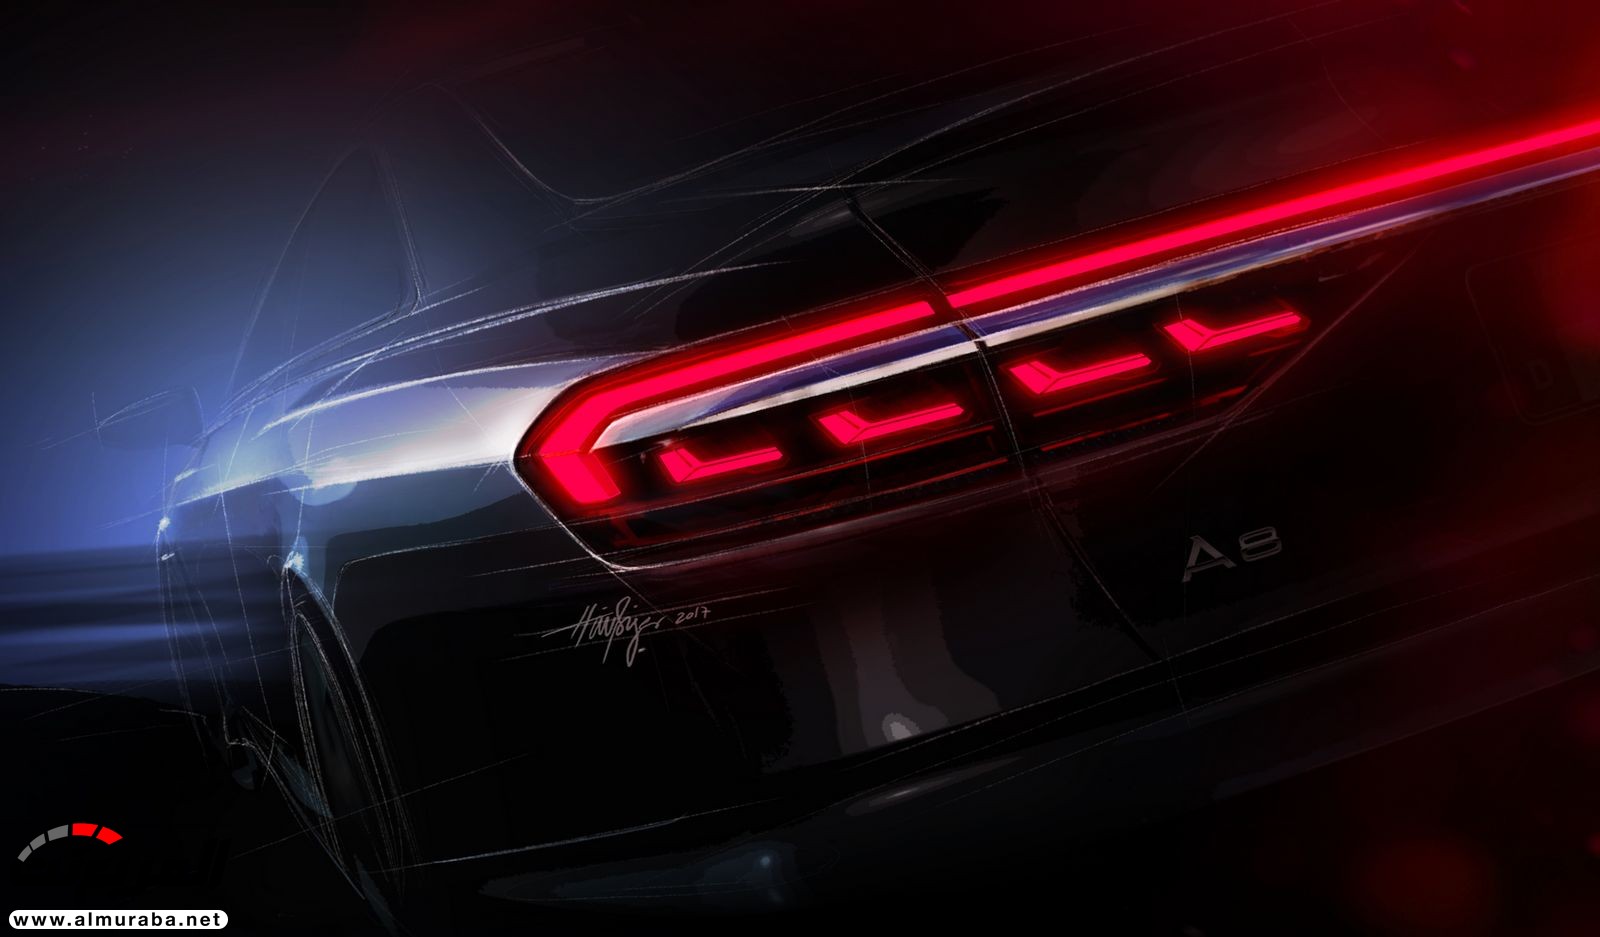 أودي A8 2018 الجديدة كلياً تكشف نفسها بتصميم وتقنيات متطورة "معلومات + 100 صورة" Audi A8 15